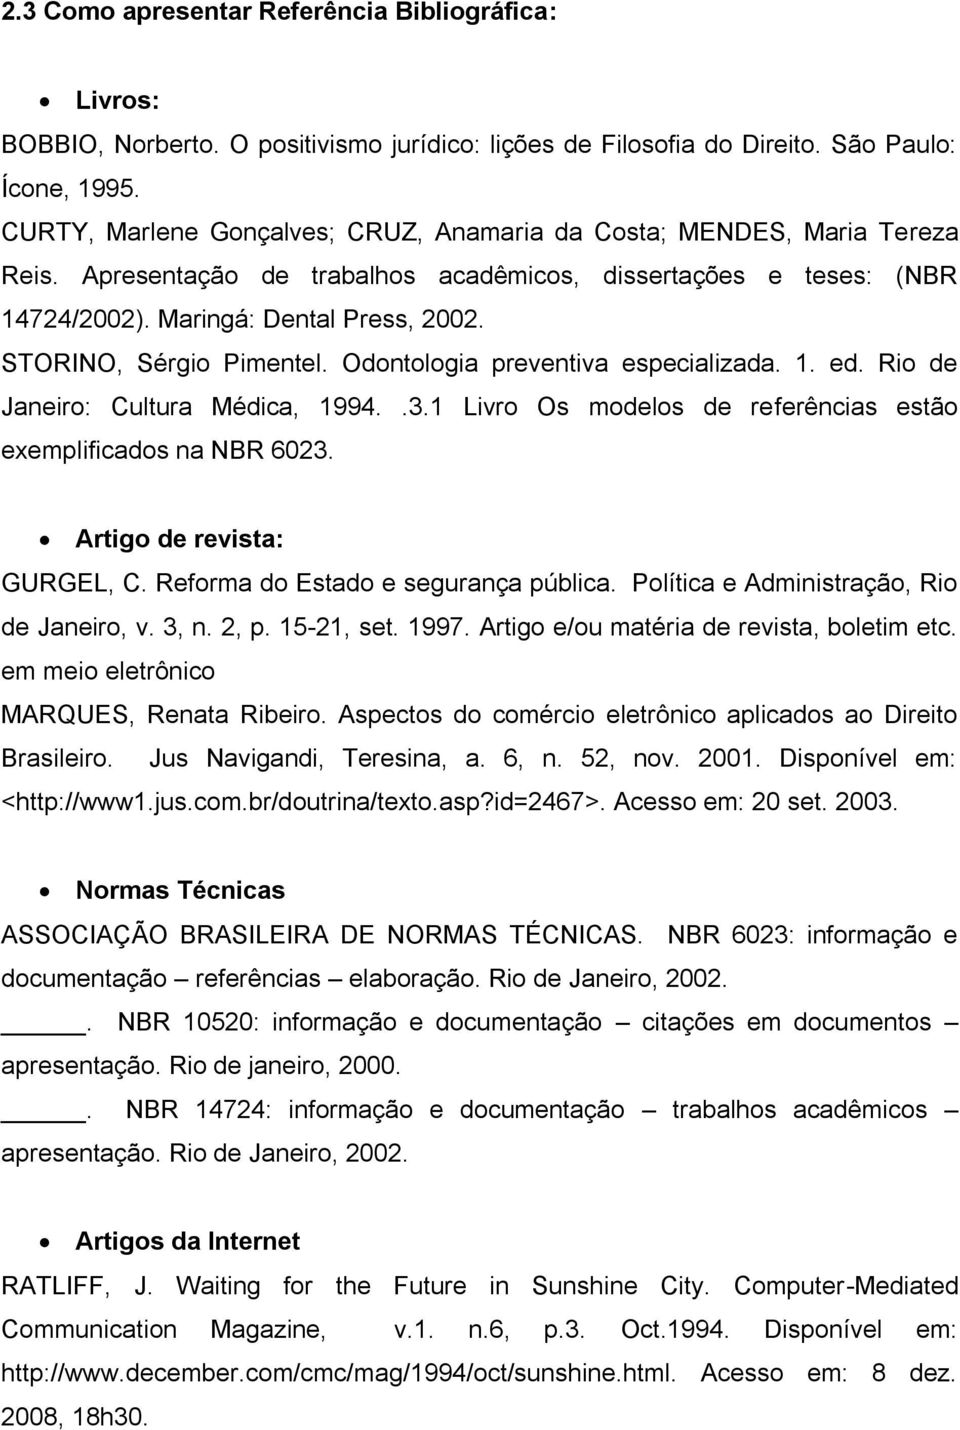 STORINO, Sérgio Pimentel. Odontologia preventiva especializada. 1. ed. Rio de Janeiro: Cultura Médica, 1994..3.1 Livro Os modelos de referências estão exemplificados na NBR 6023.